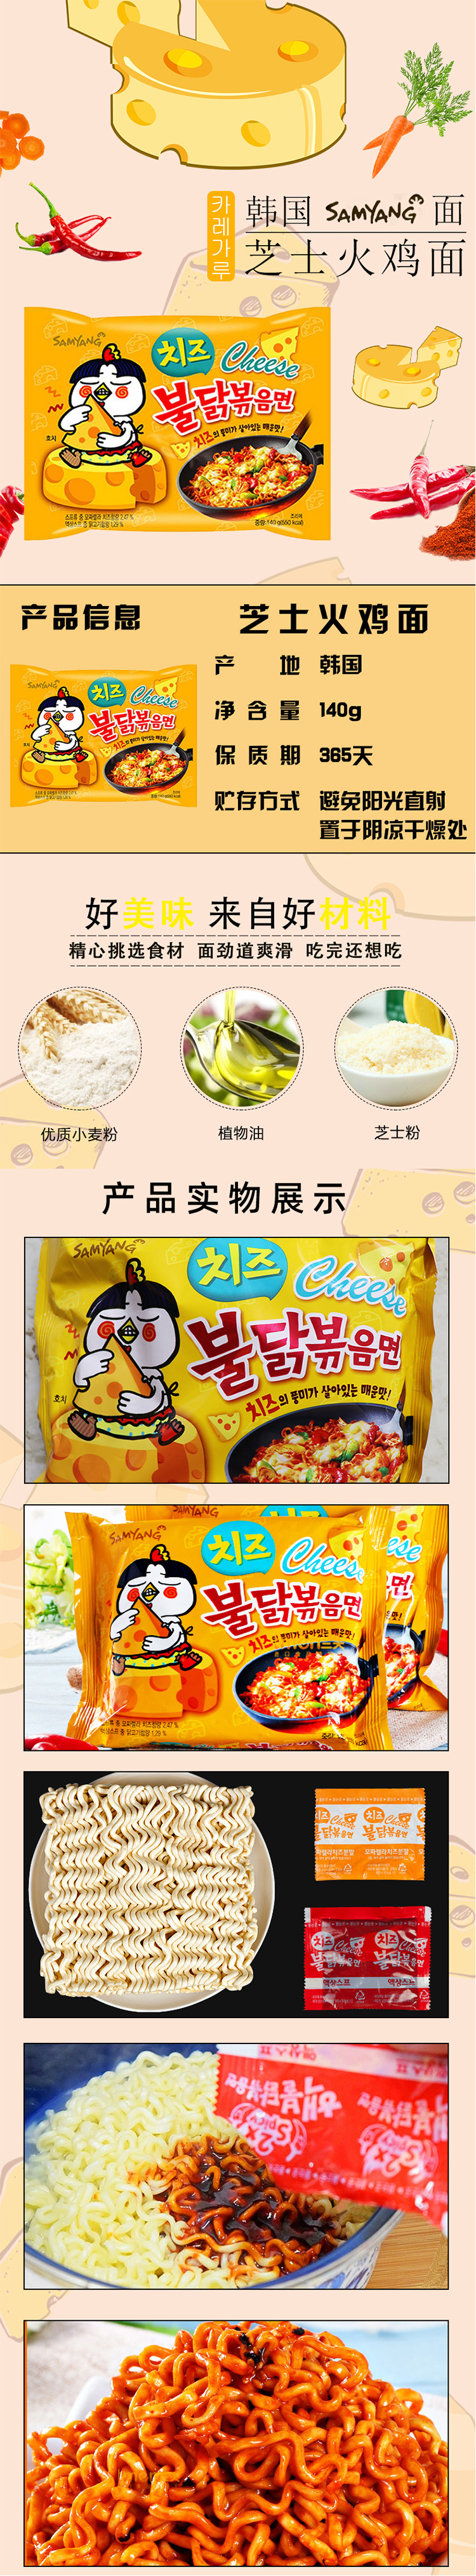 韩国芝士火鸡面方便面三养超辣火鸡拉面奶酪面140g拌面拍